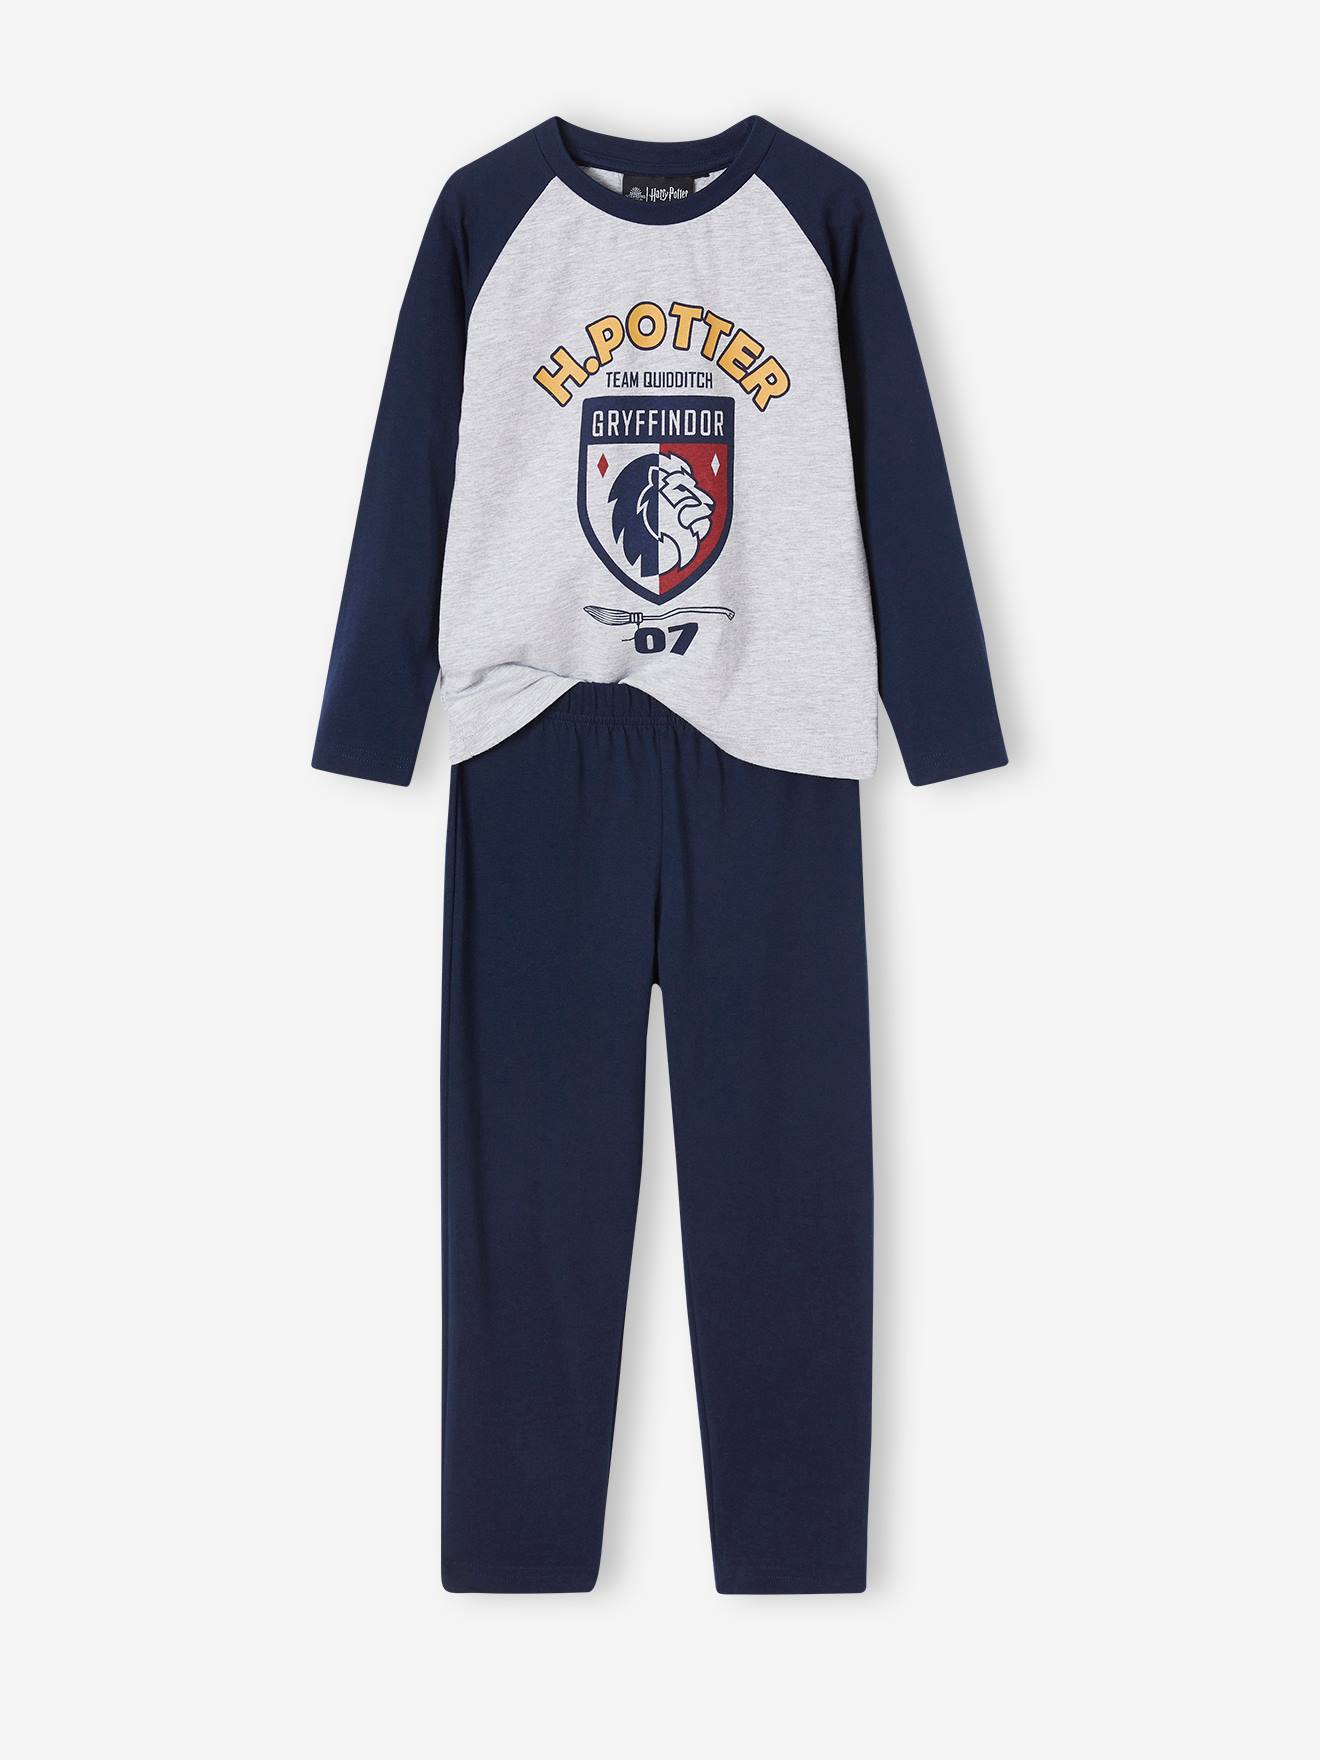 Harry Potter® Pyjamas for Boys - navy blue